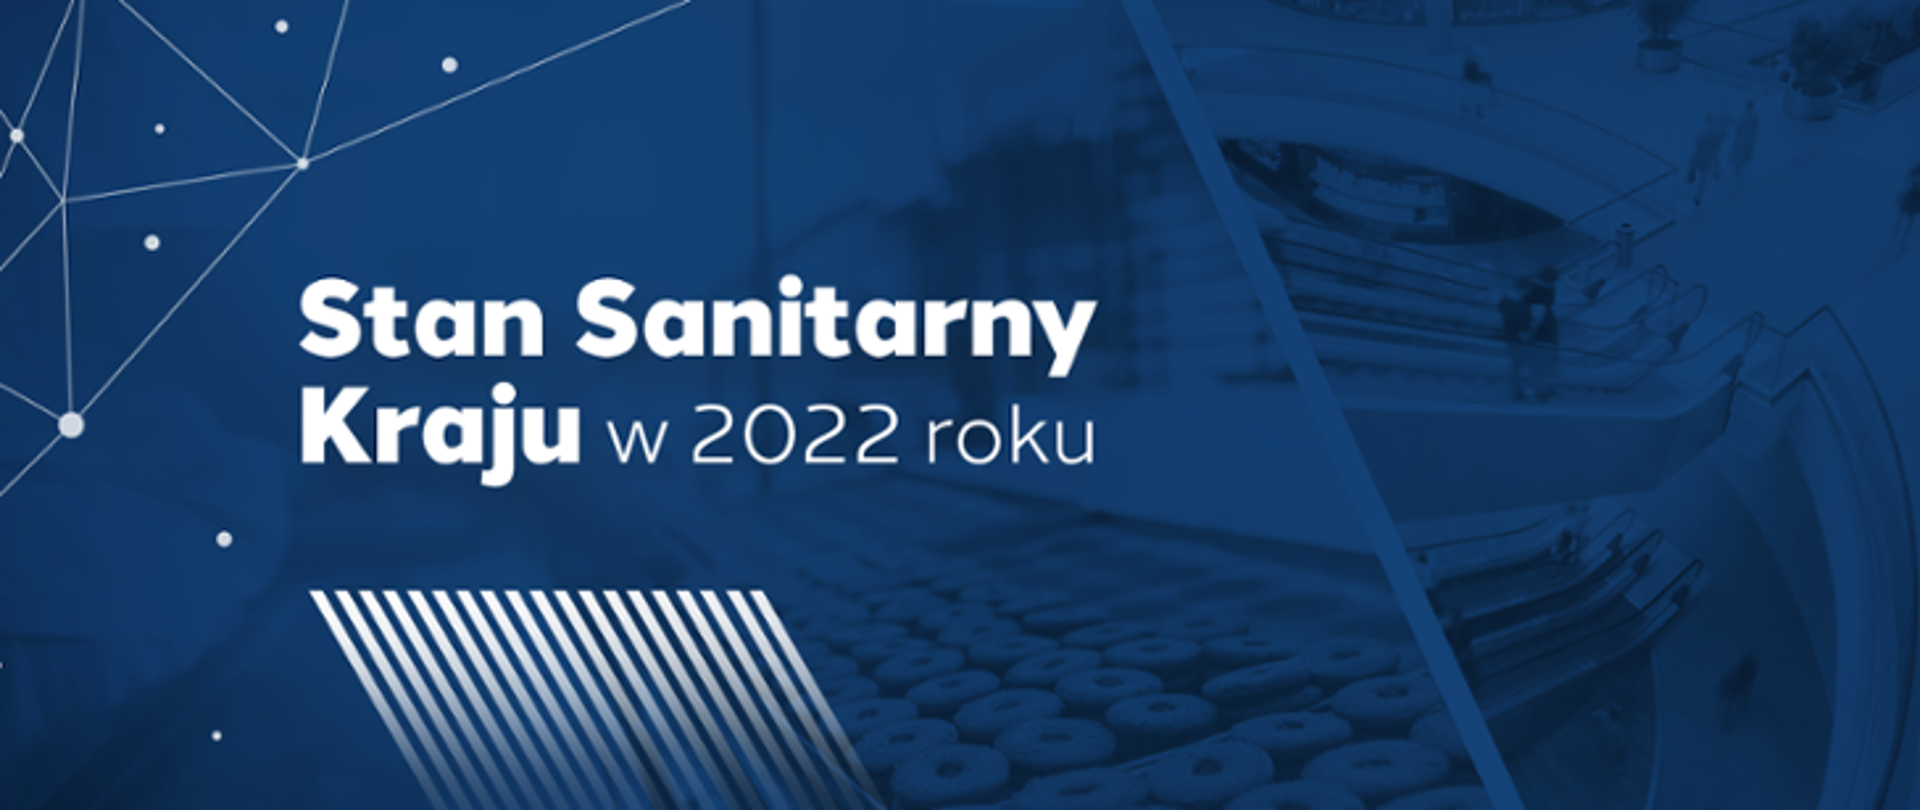 Stan Sanitarny Kraju w 2022 roku